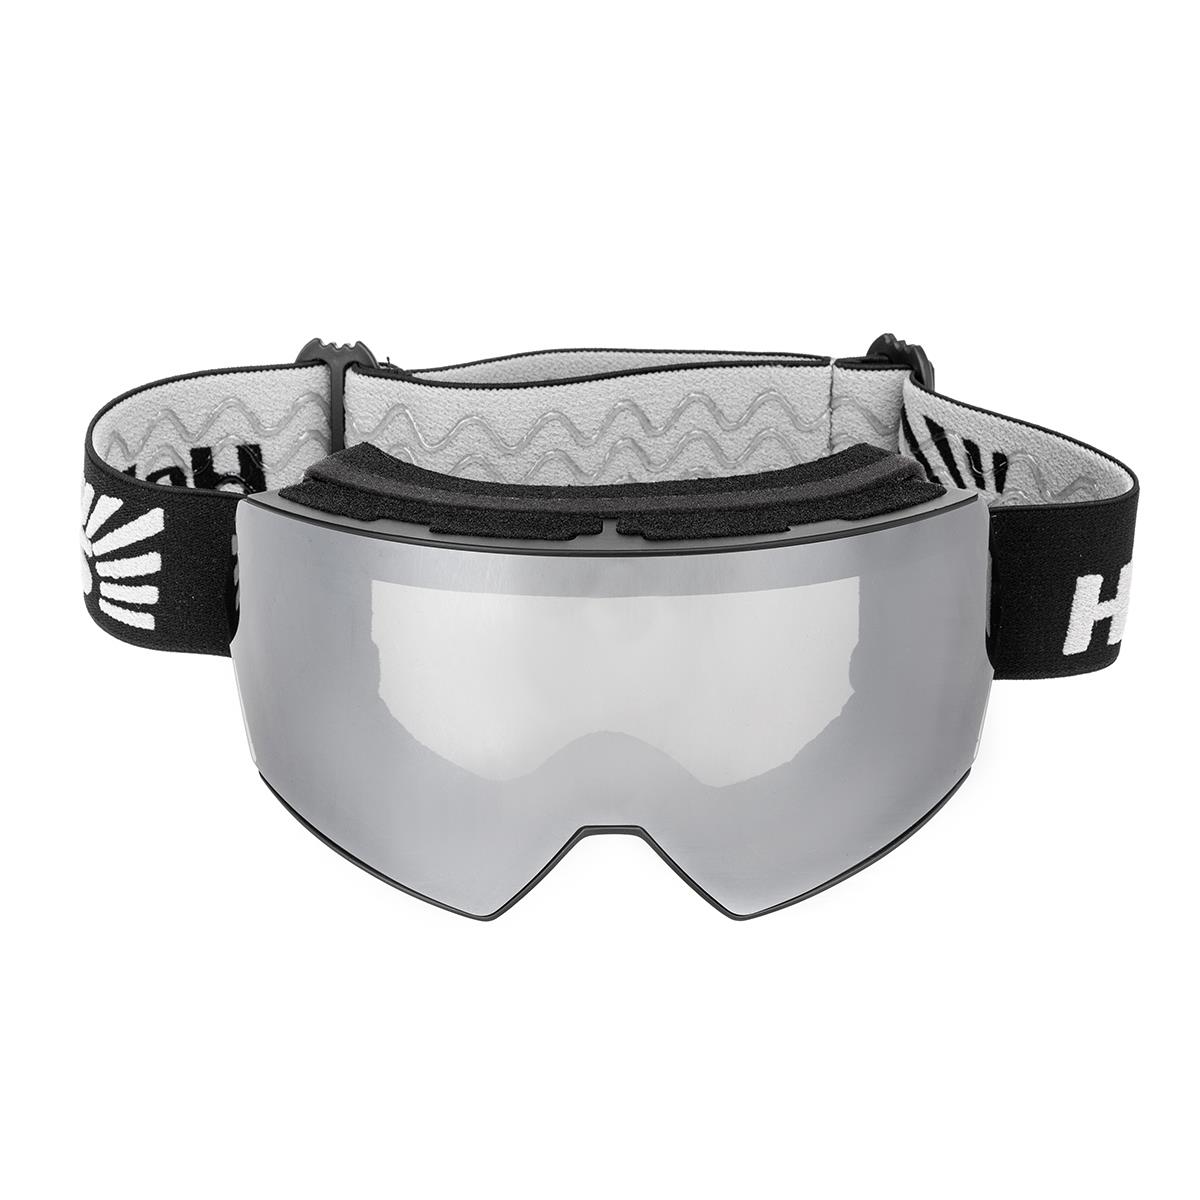 Очки горнолыжные HS-HX-010-GY Helios очки для плавания взрослые uv защита